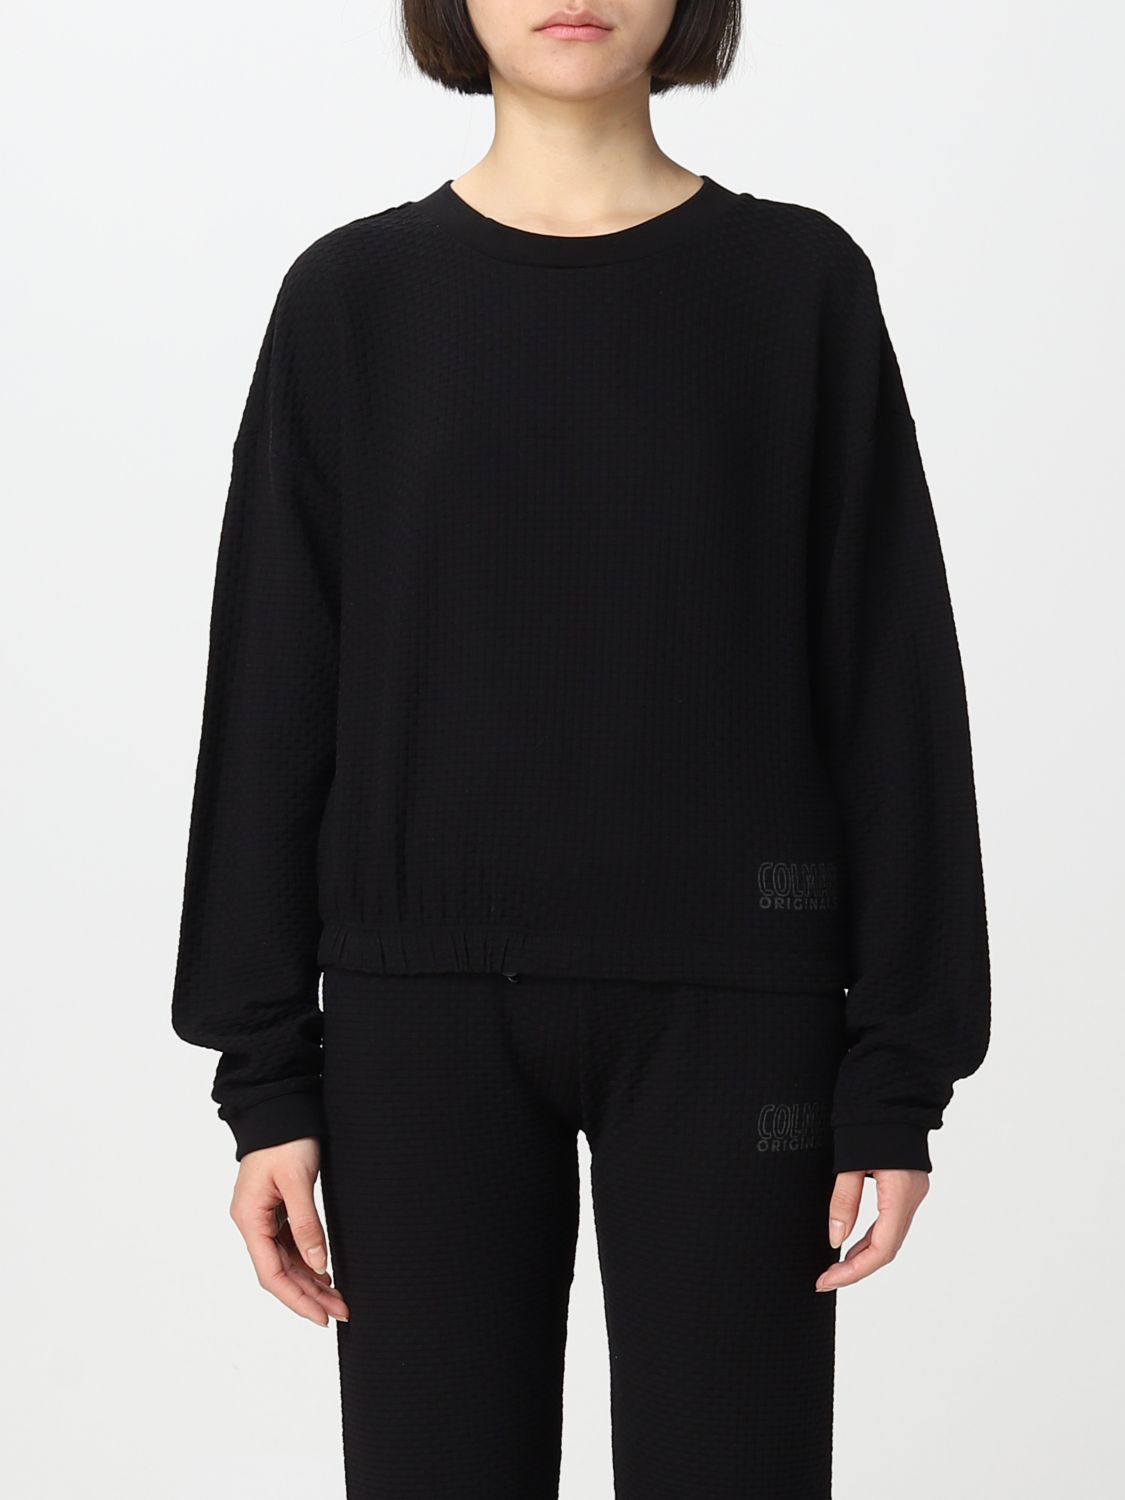 COLMAR: sweater for woman - Black | Colmar sweater 92123XO online on ...